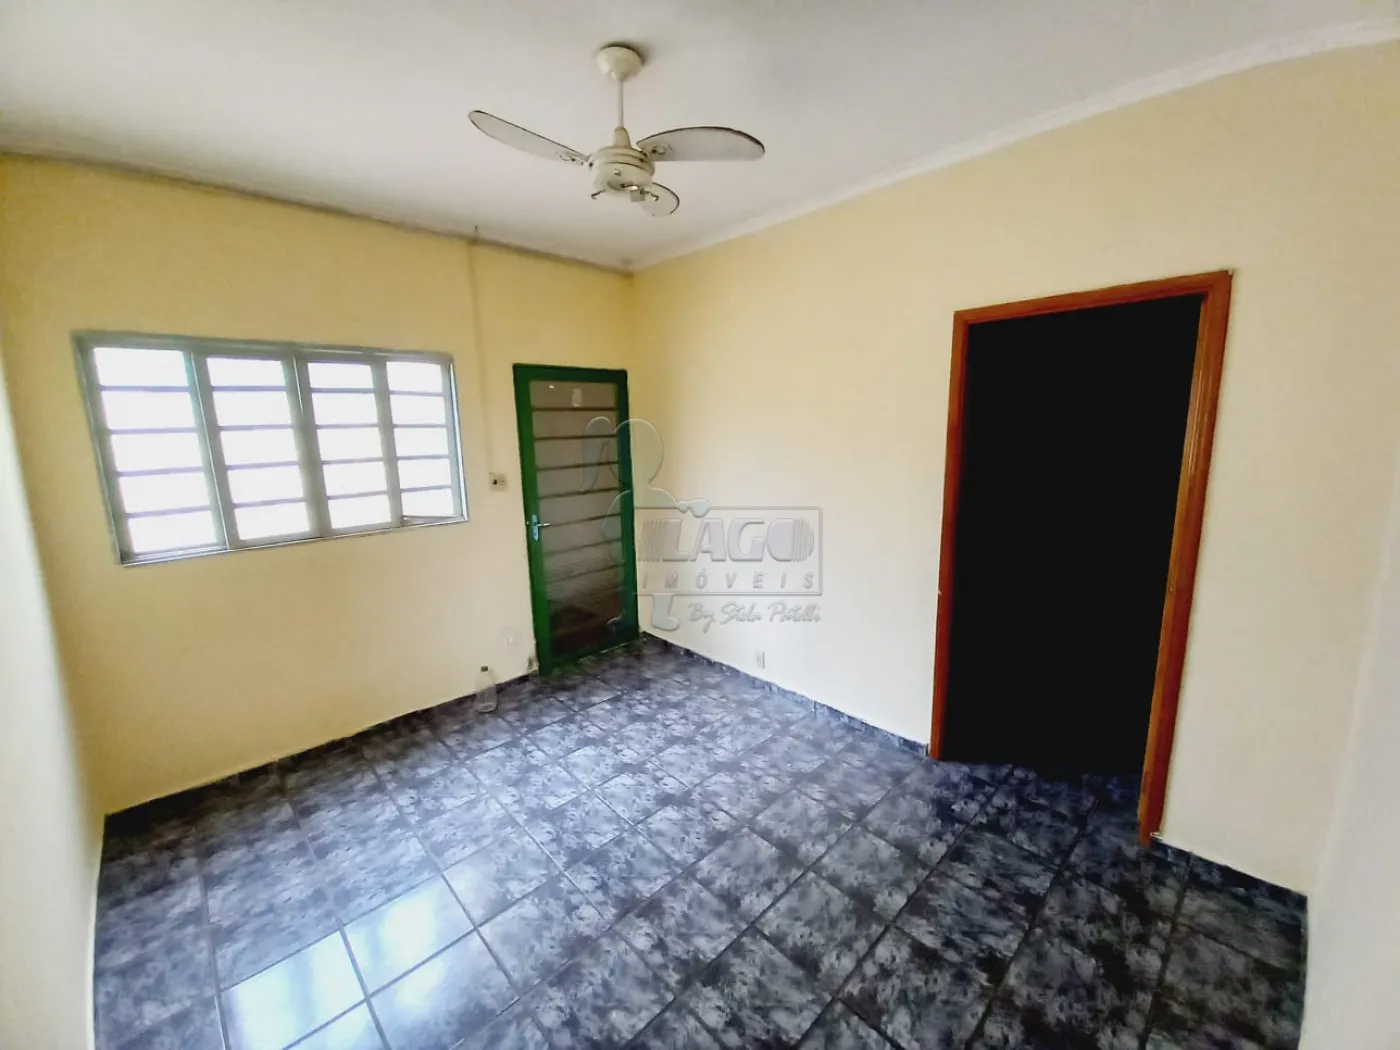 Comprar Casas / Padrão em Ribeirão Preto R$ 430.000,00 - Foto 11